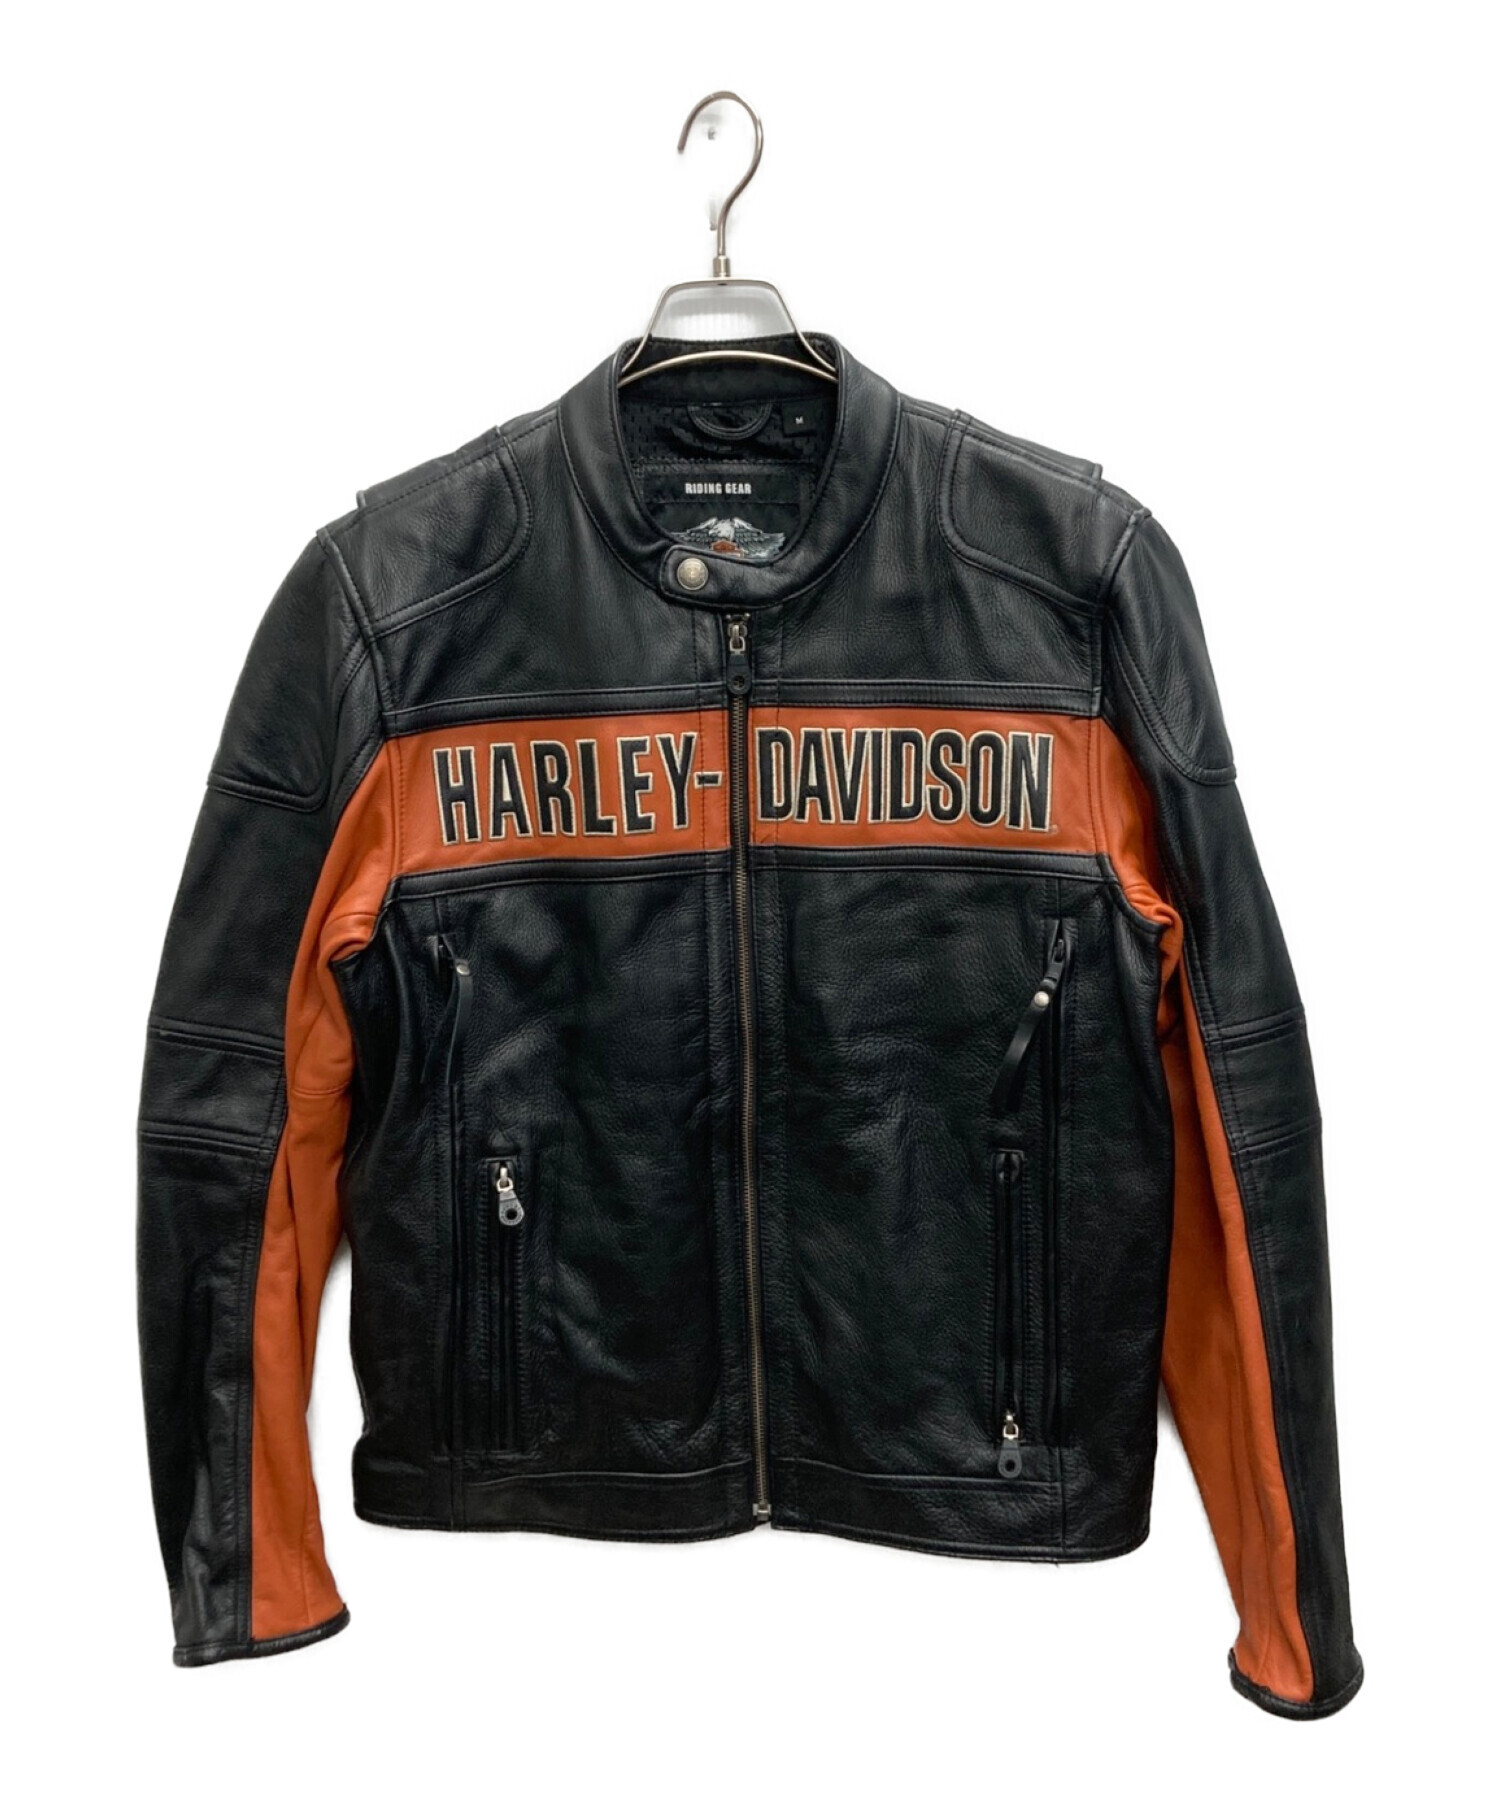 HARLEY-DAVIDSON (ハーレーダビッドソン) Classic Riding Leather  Jacket(クラシックライディングレザージャケット) ブラック サイズ:M